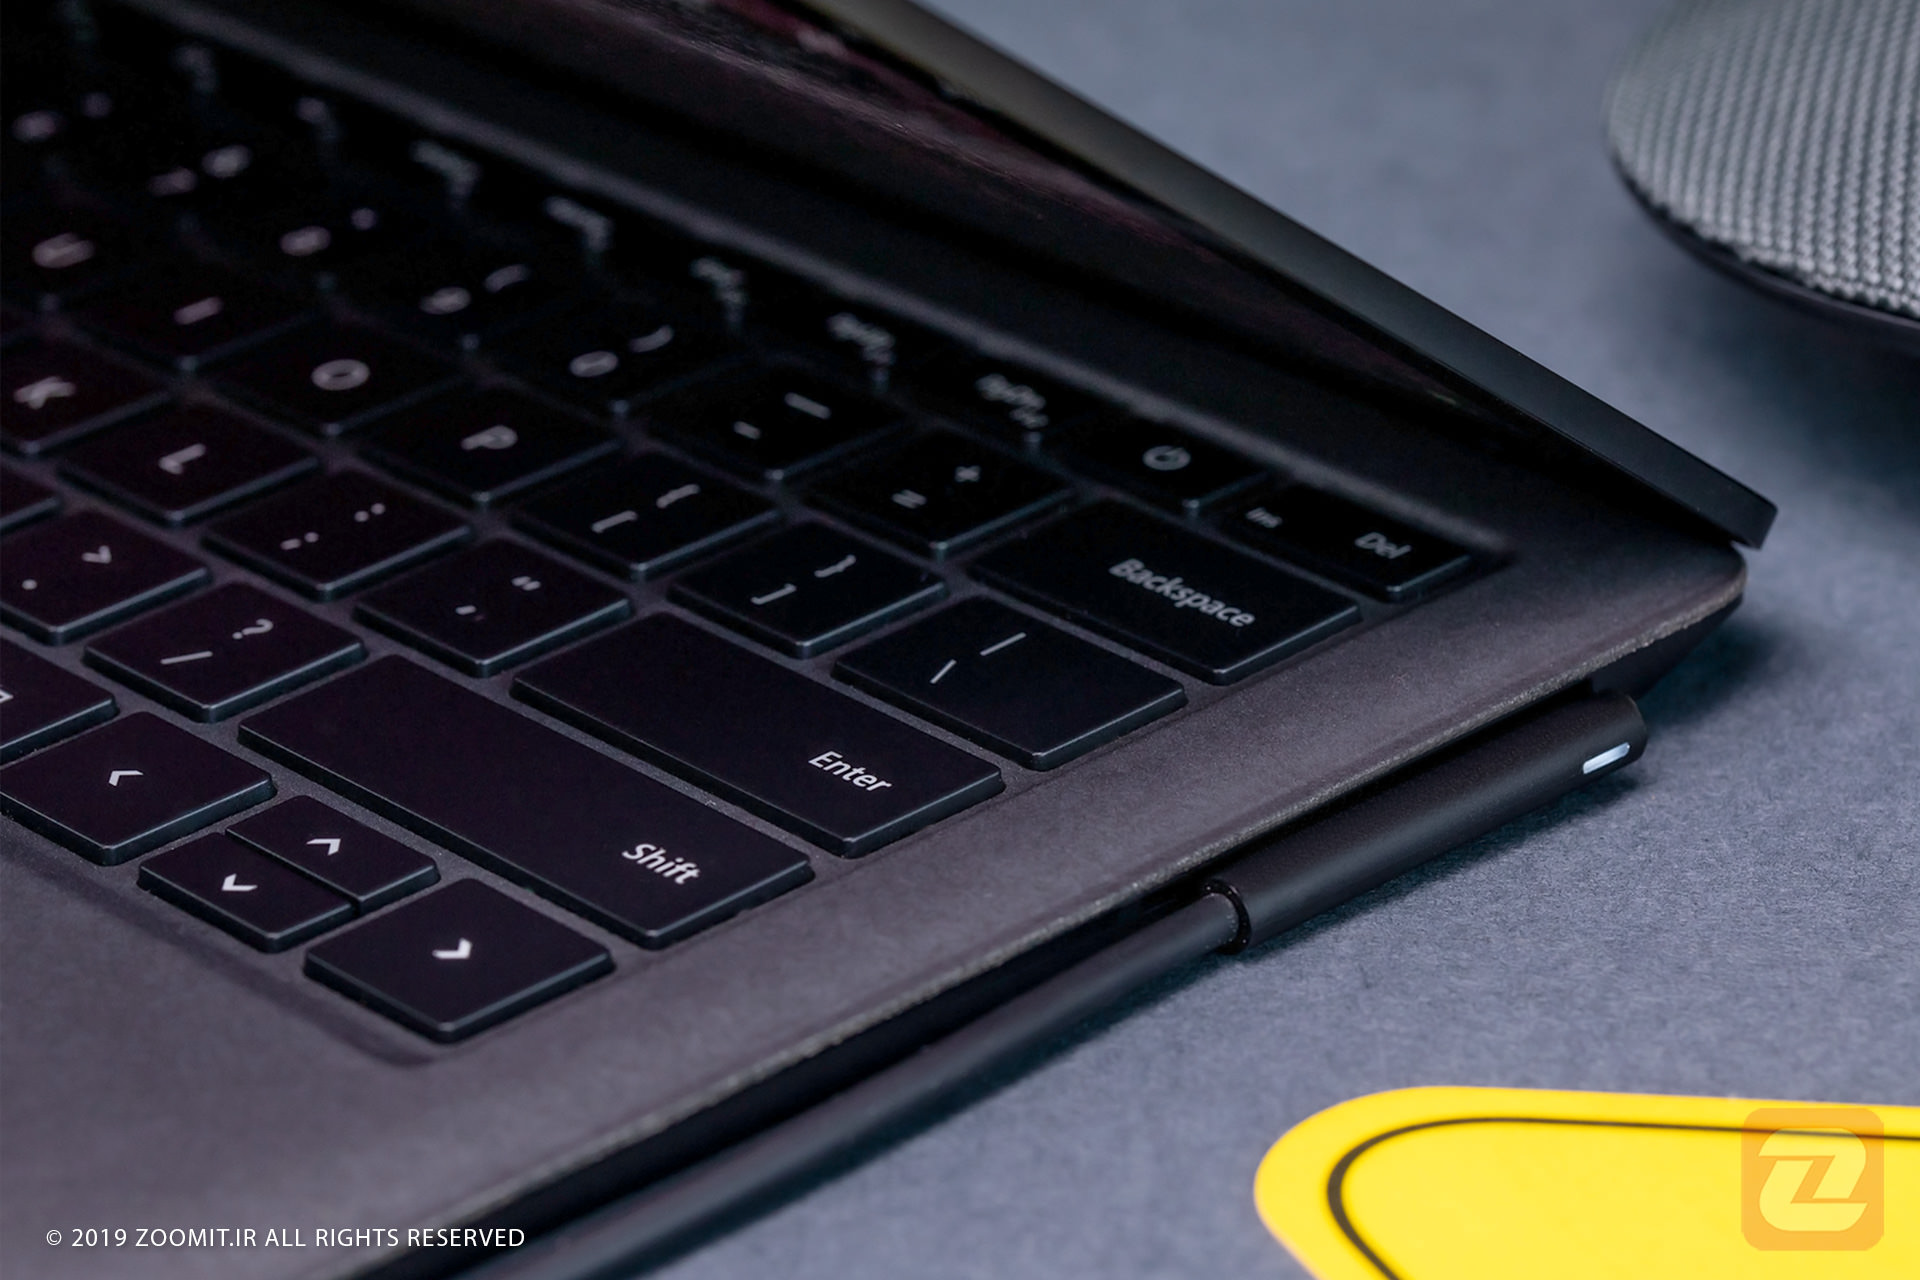 سرفیس لپ تاپ ۲ / Surface Laptop 2